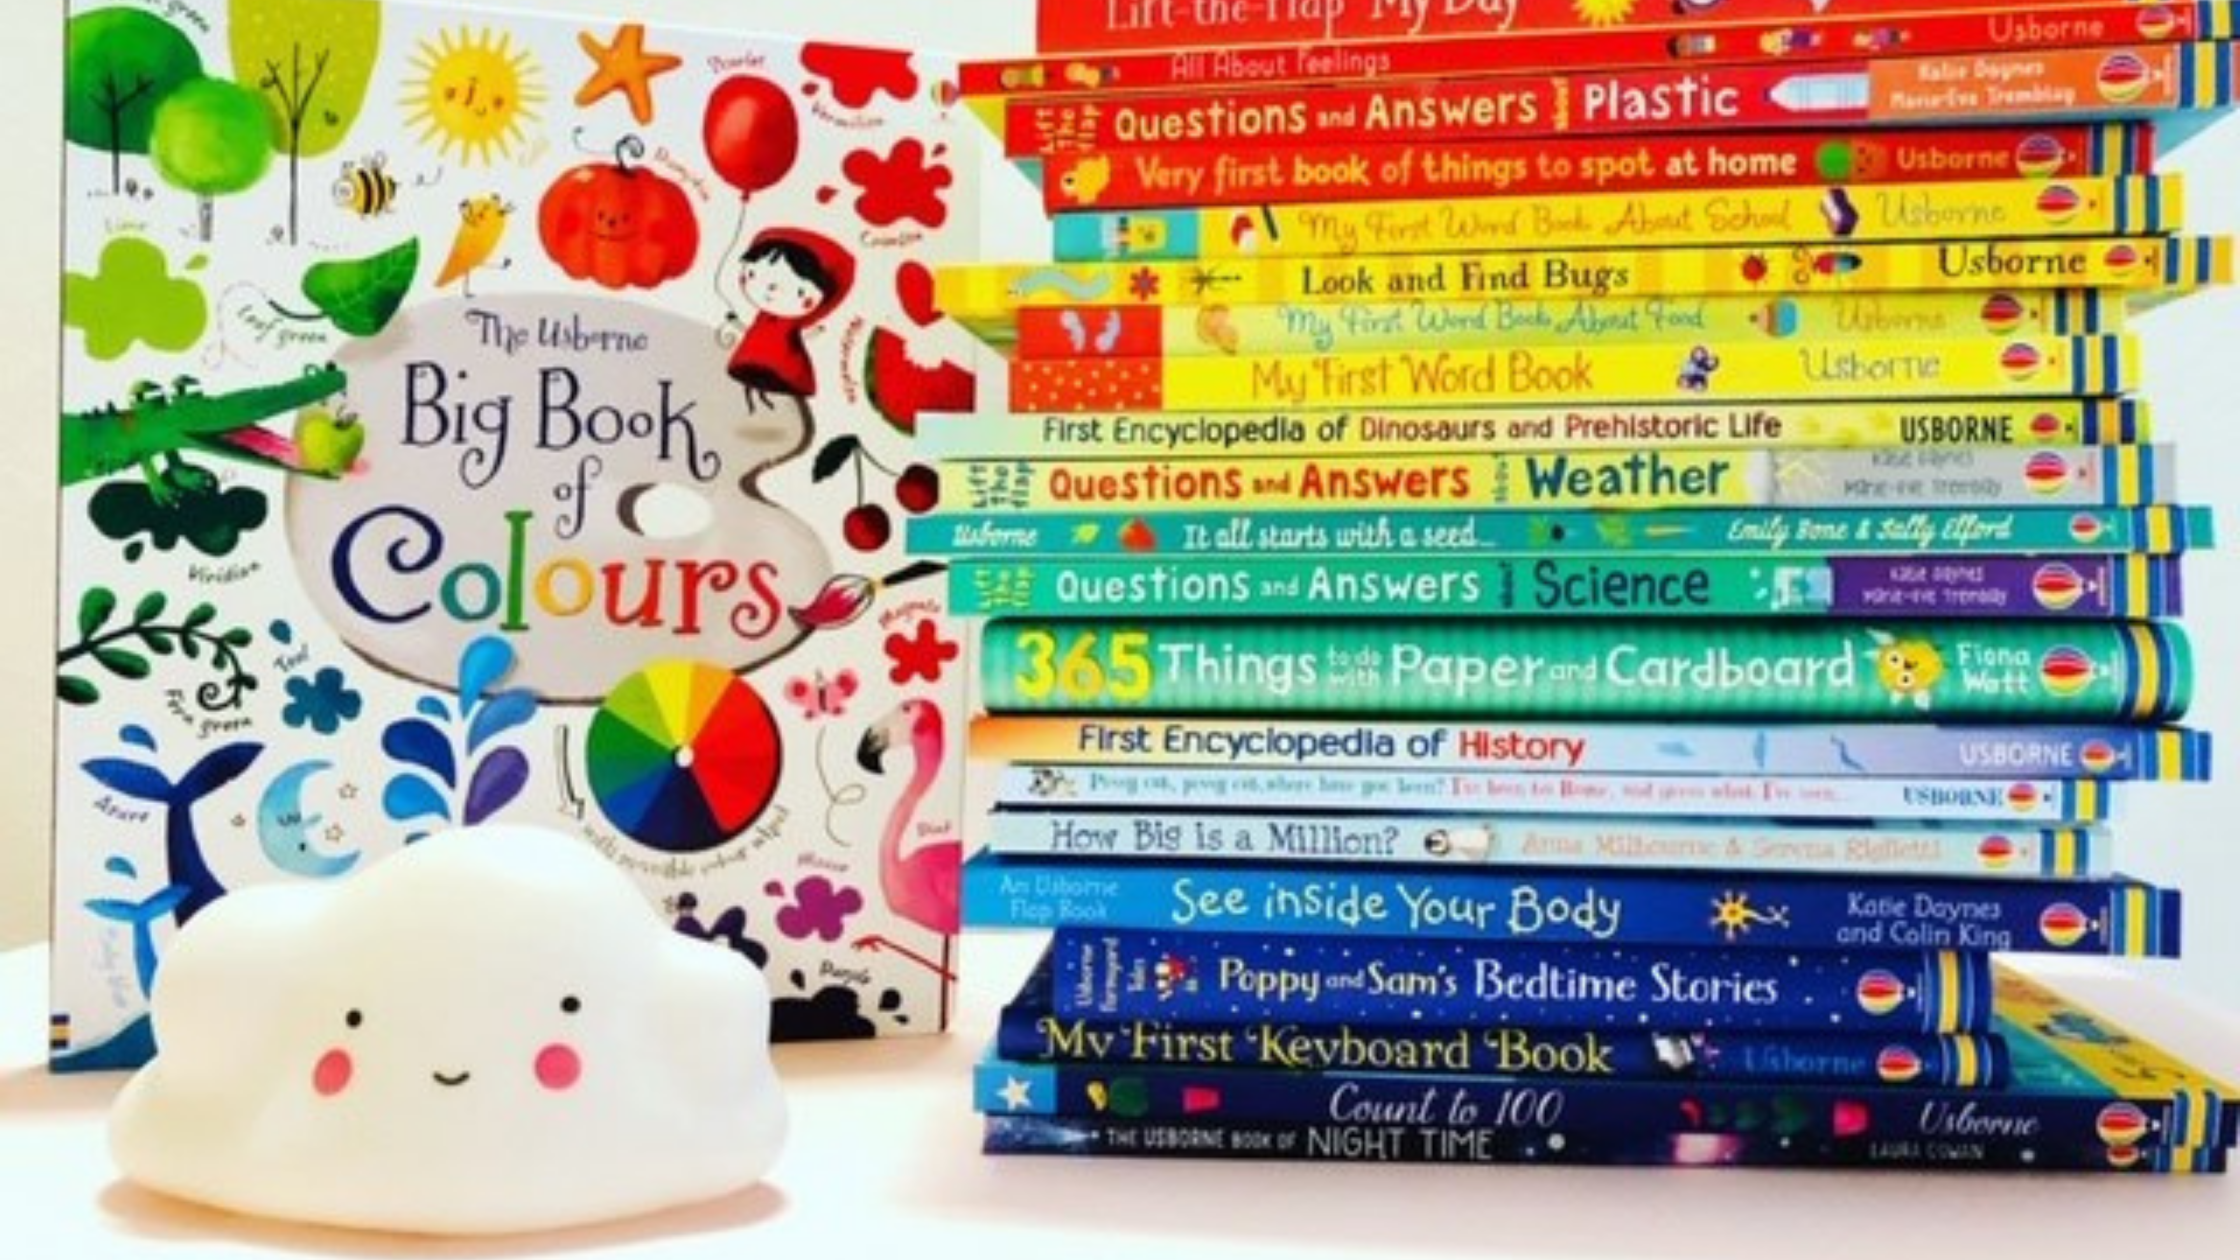 Lavorare da casa con i libri per bambini Usborne - Scuolainsoffitta